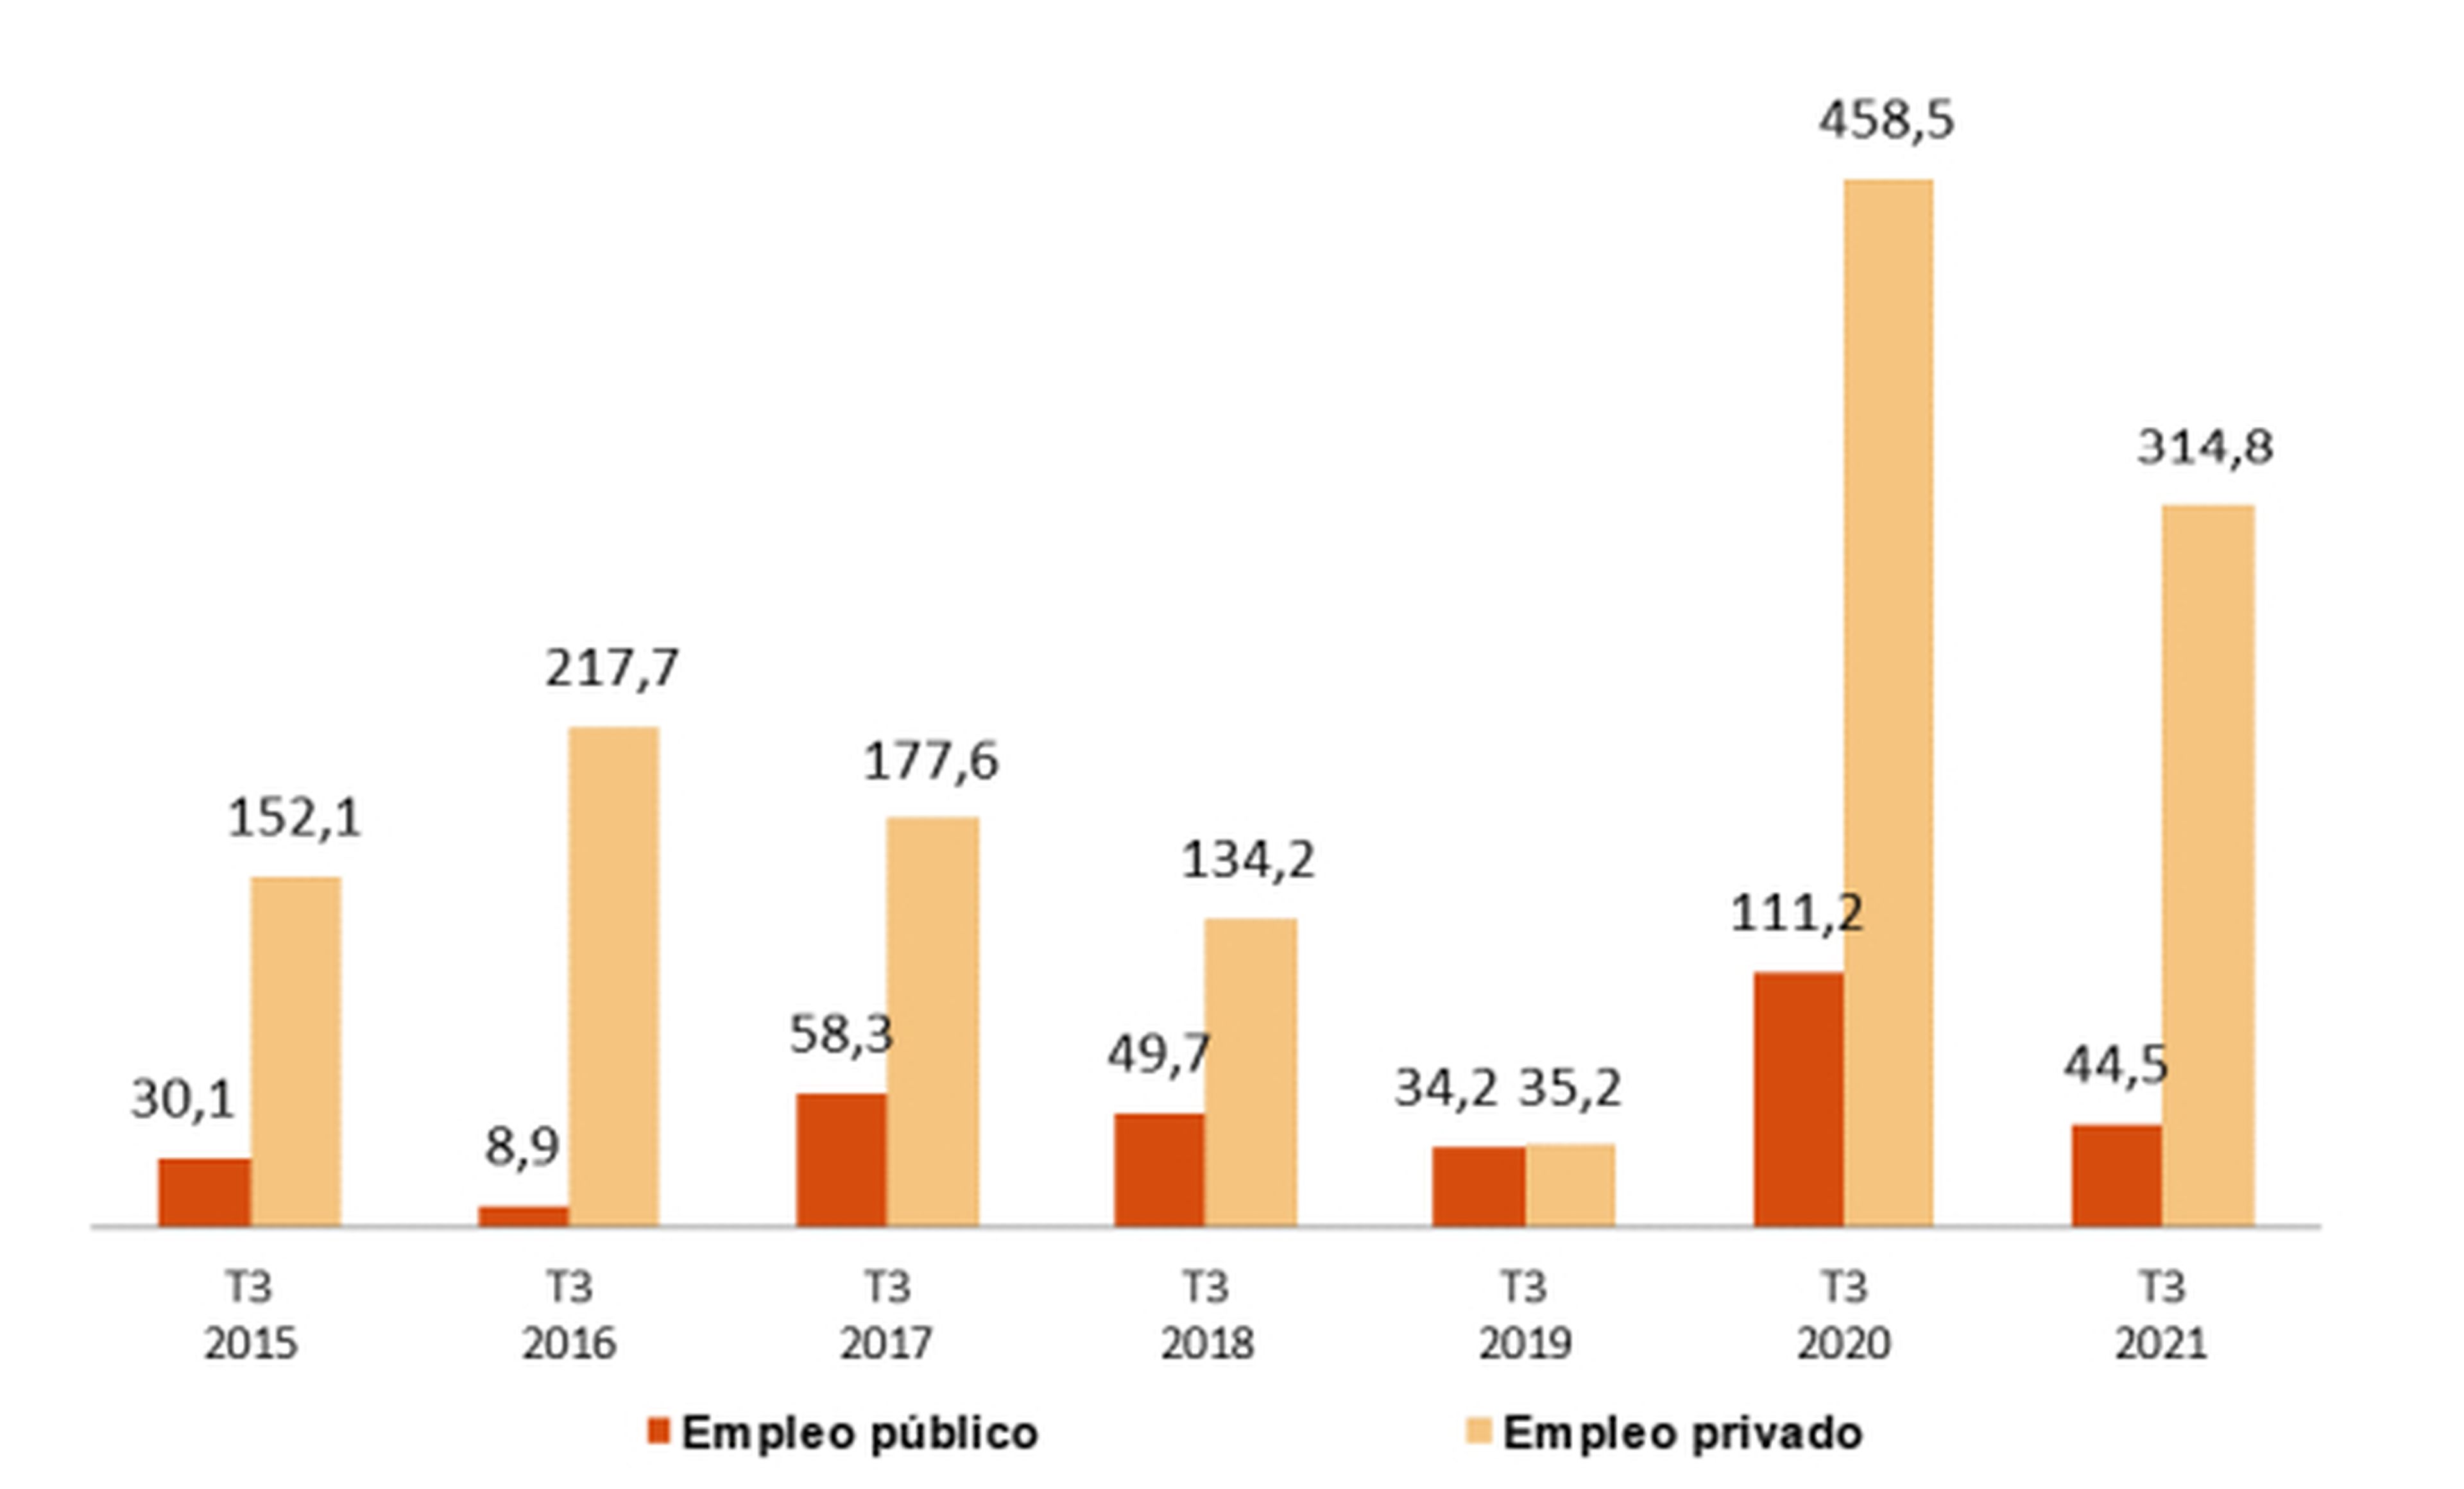 Variación del empleo público y privado en el tercer trimestre entre 2015 y 2021